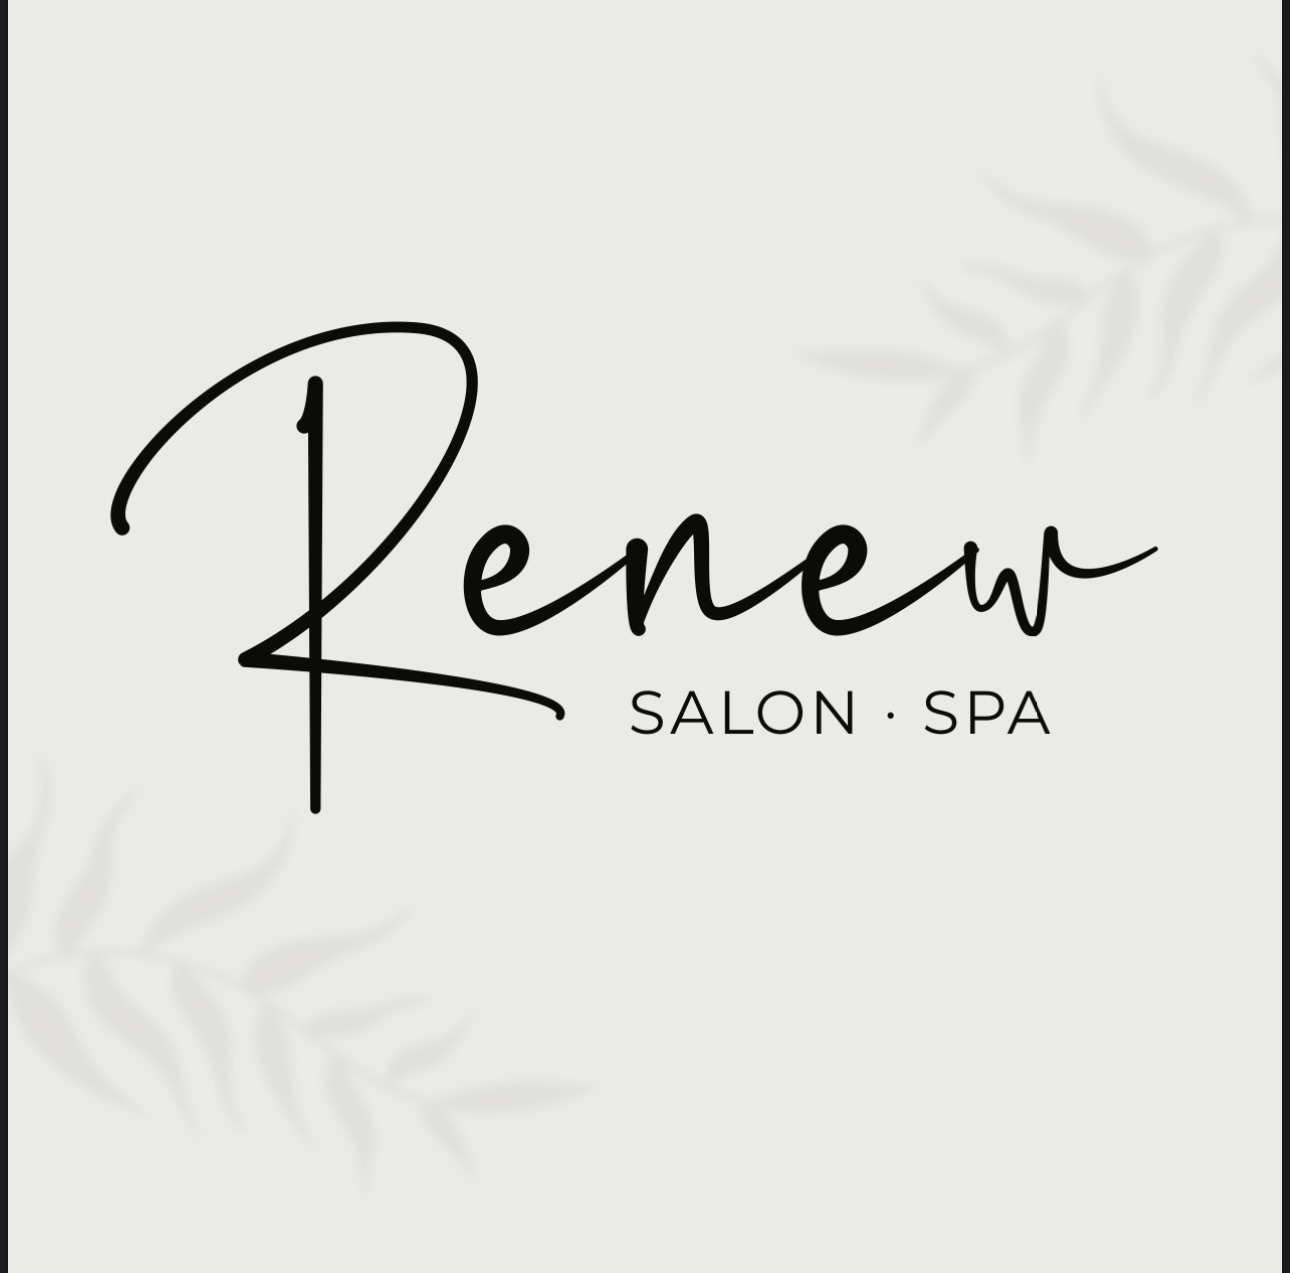 Renew Salon & Spa